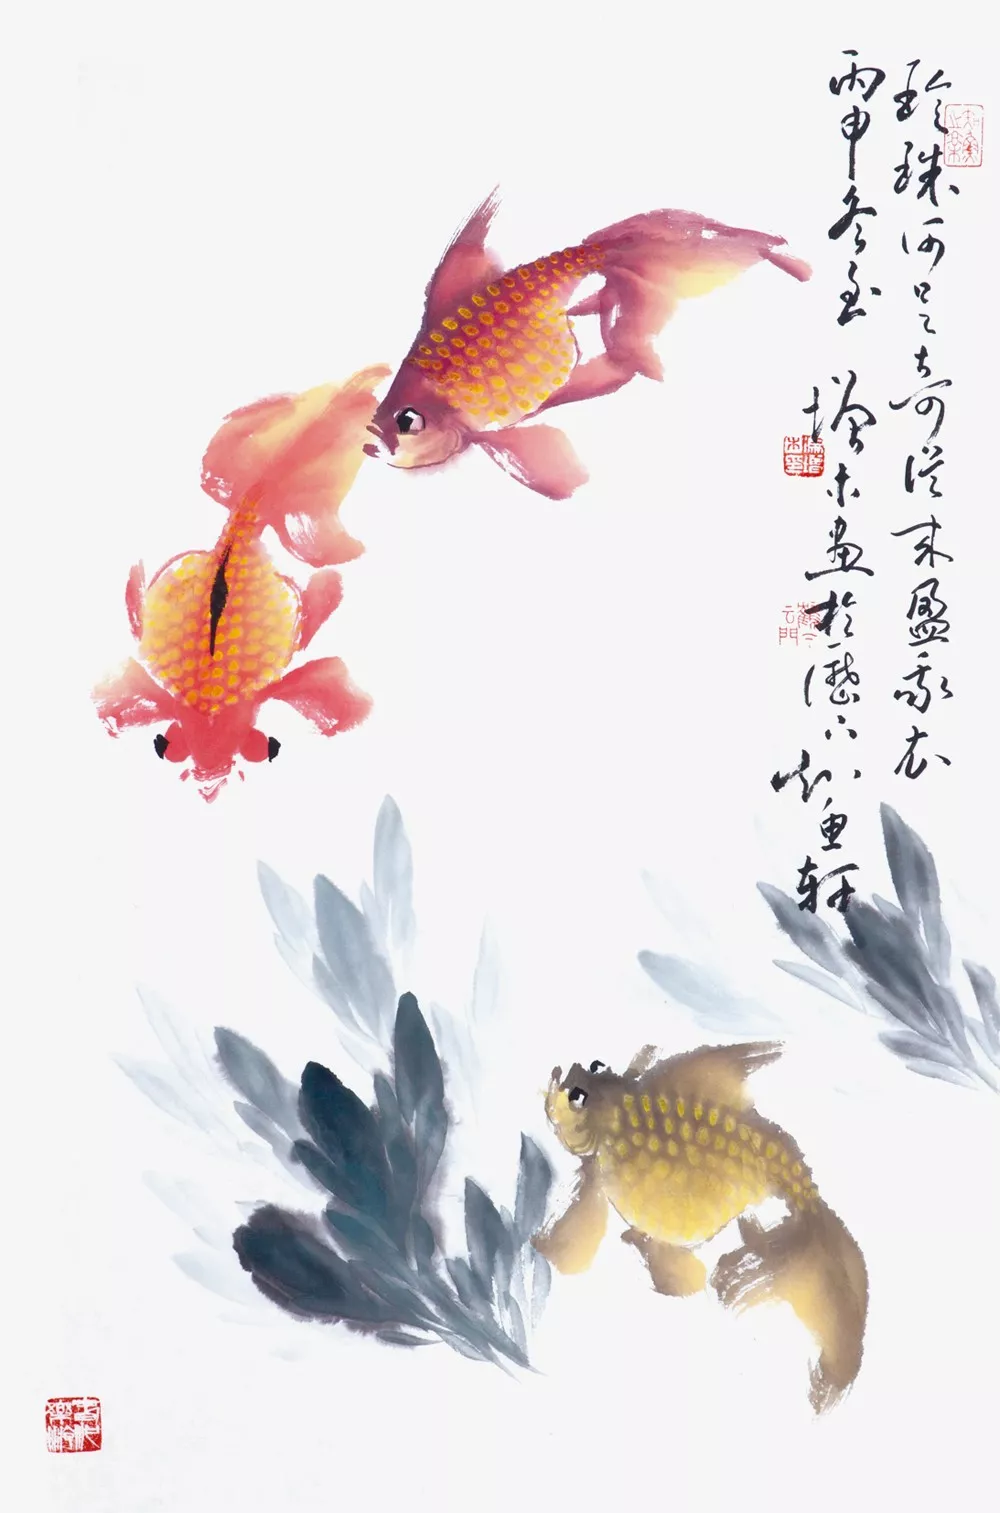 画家冯增木写意金鱼画法图37